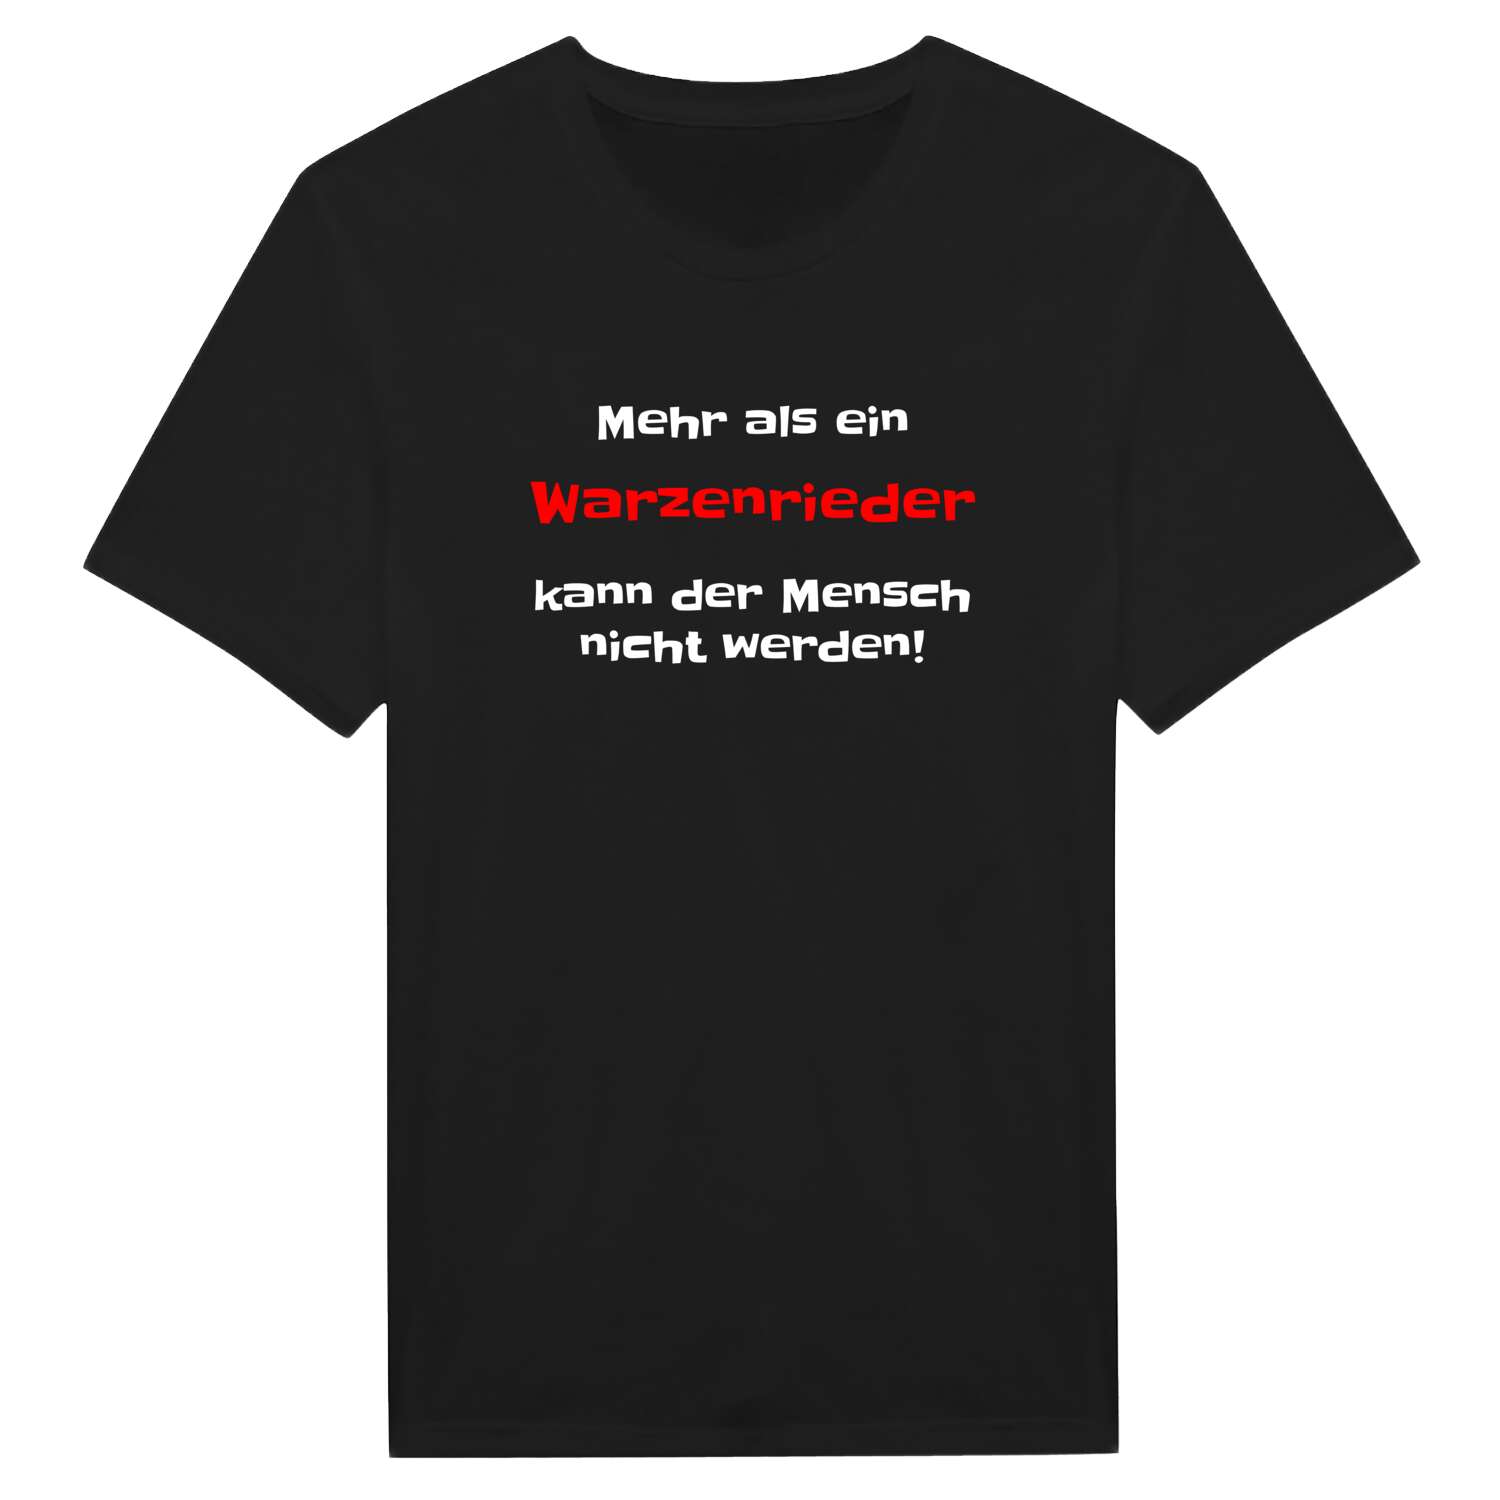 Warzenried T-Shirt »Mehr als ein«